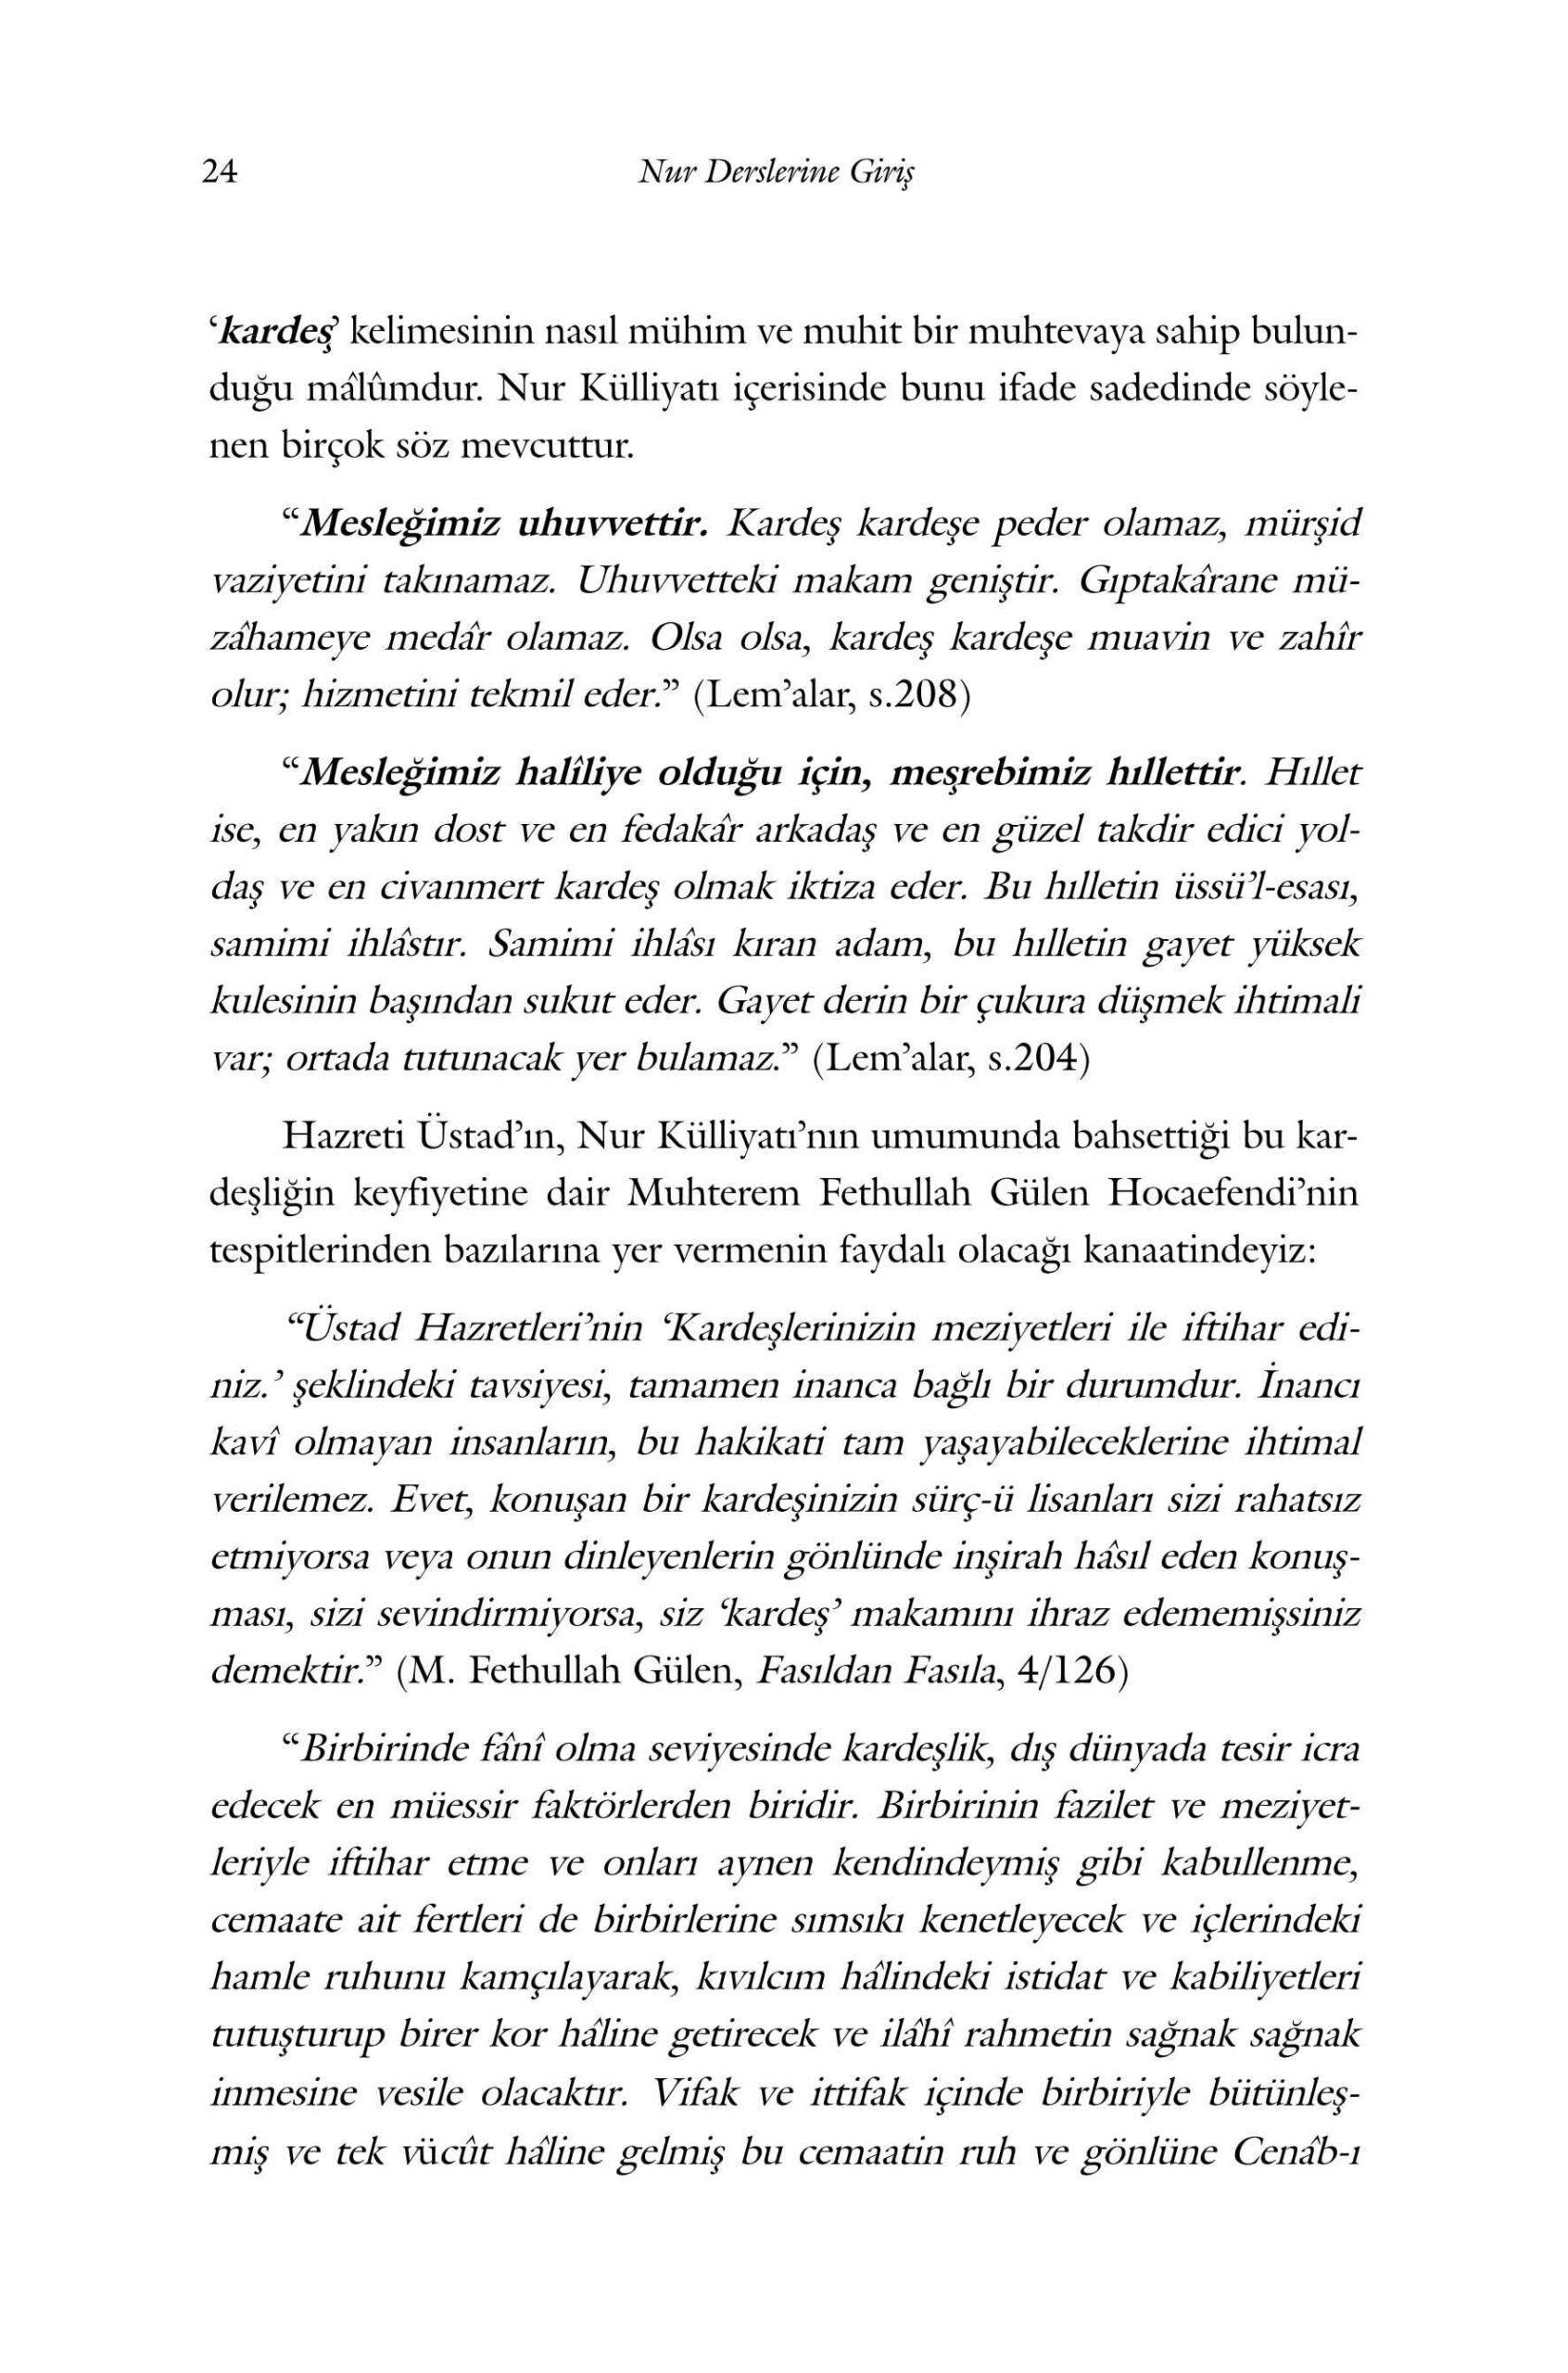 Seyit Nurfethi Erkal - 1 Nur Derslerine Giris (Birinci Soz) - SahdamarY.pdf, 183-Sayfa 